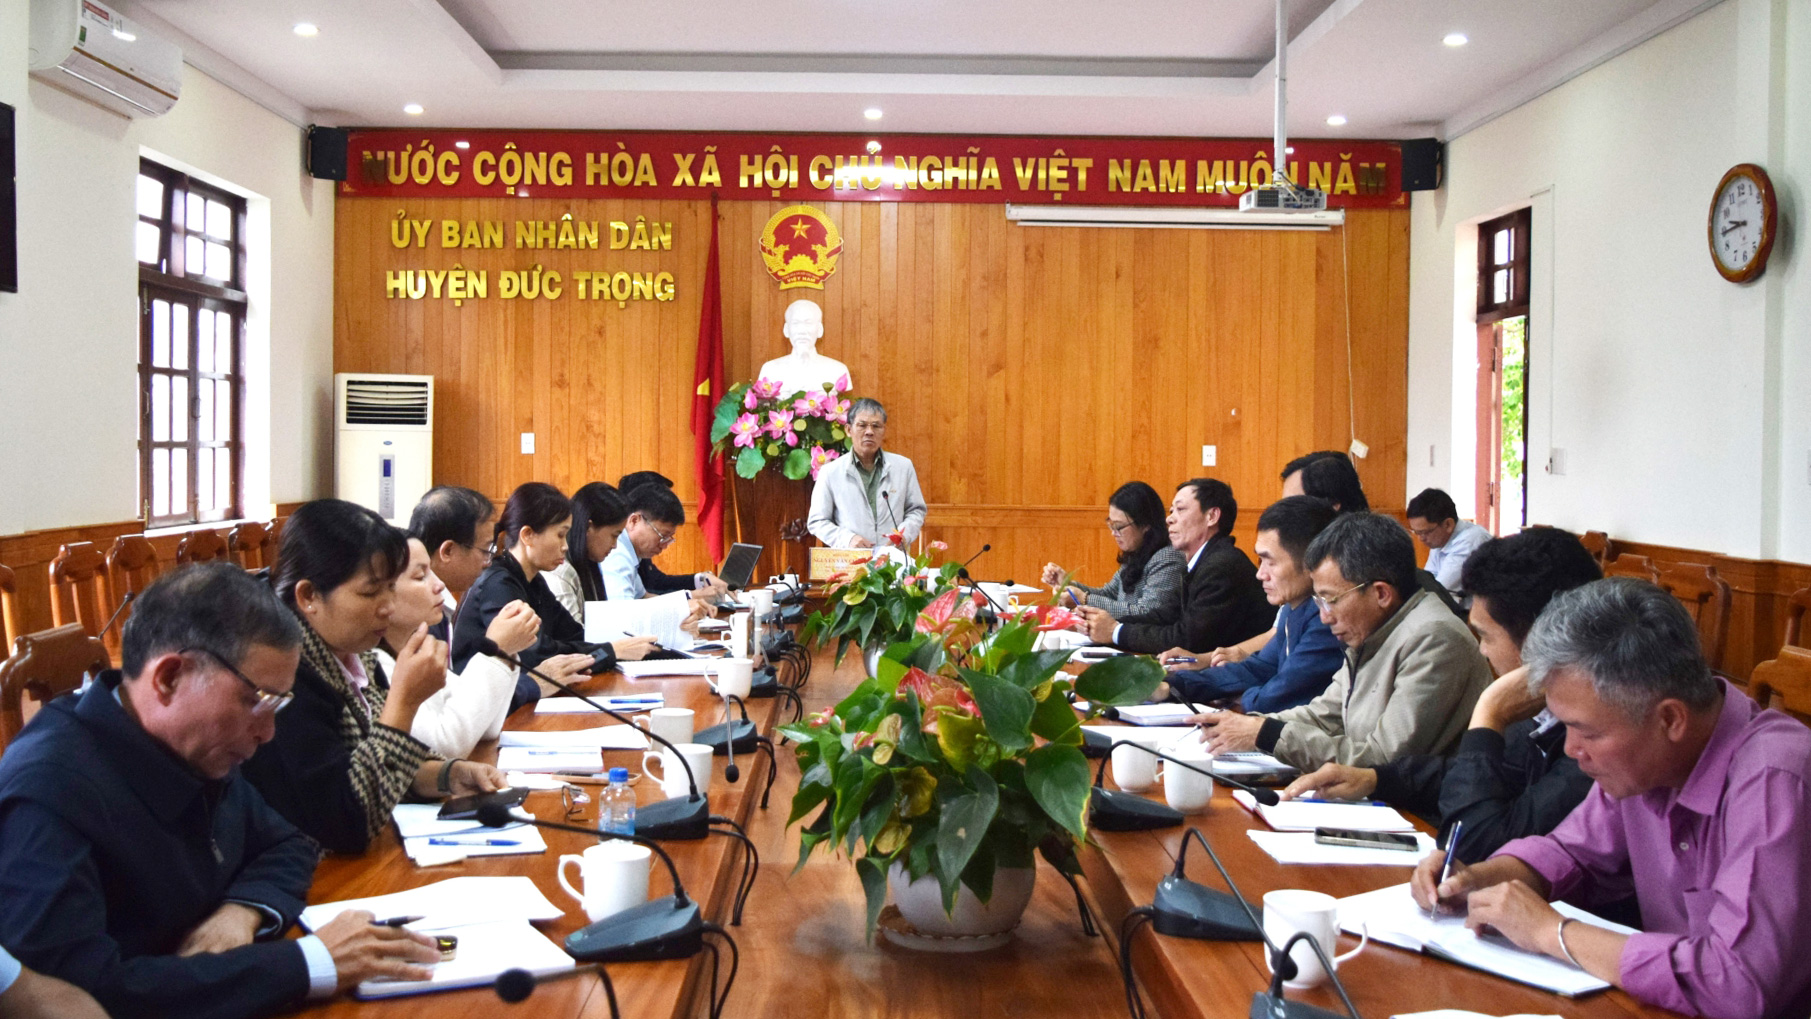 Đồng chí Nguyễn Văn Cường - Chủ tịch UBND huyện, phát biểu chỉ đạo tại hội nghị